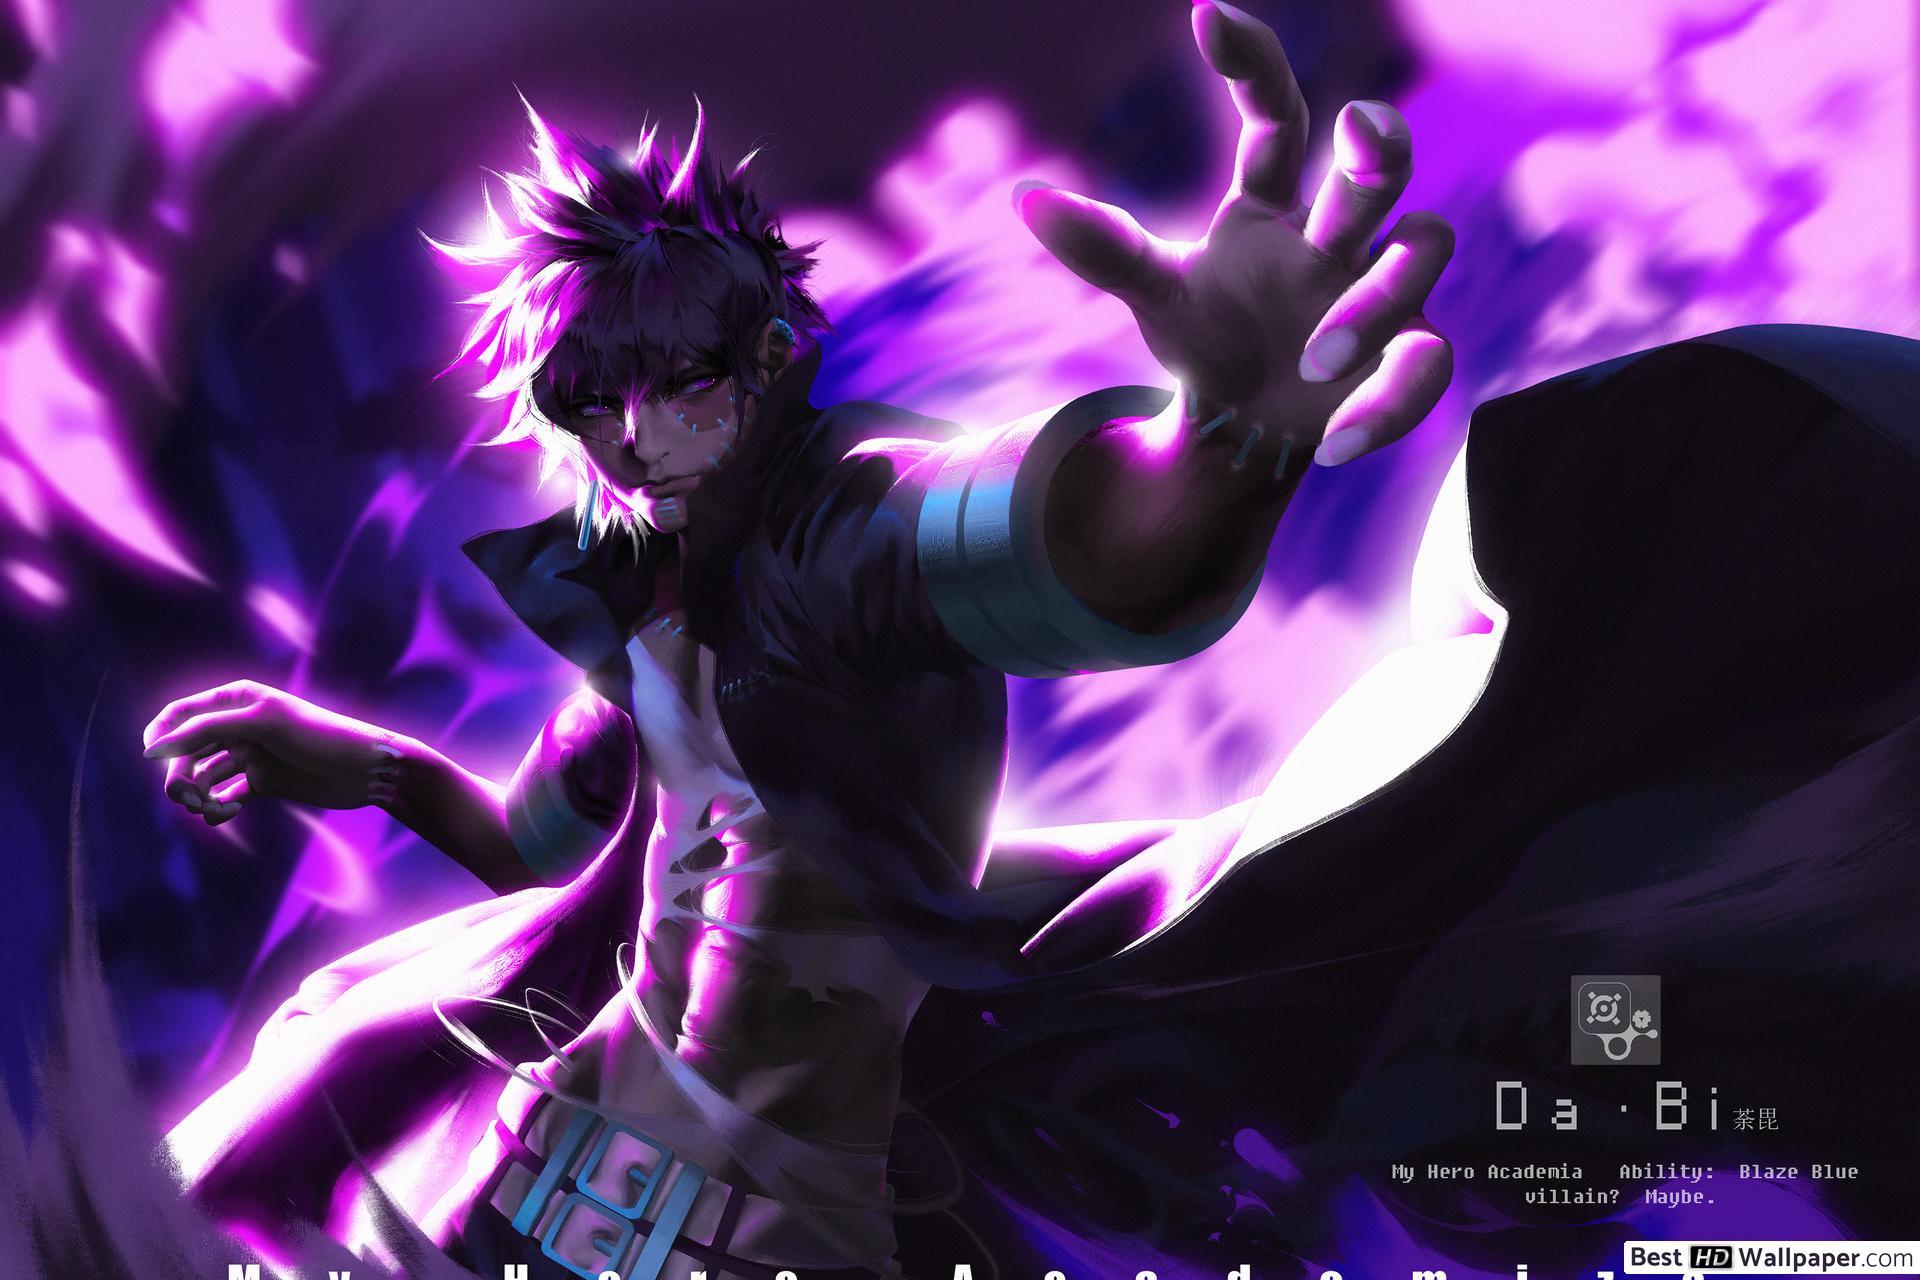 4K PC Gamer Wallpaper: Anime Villain Unleashing Power